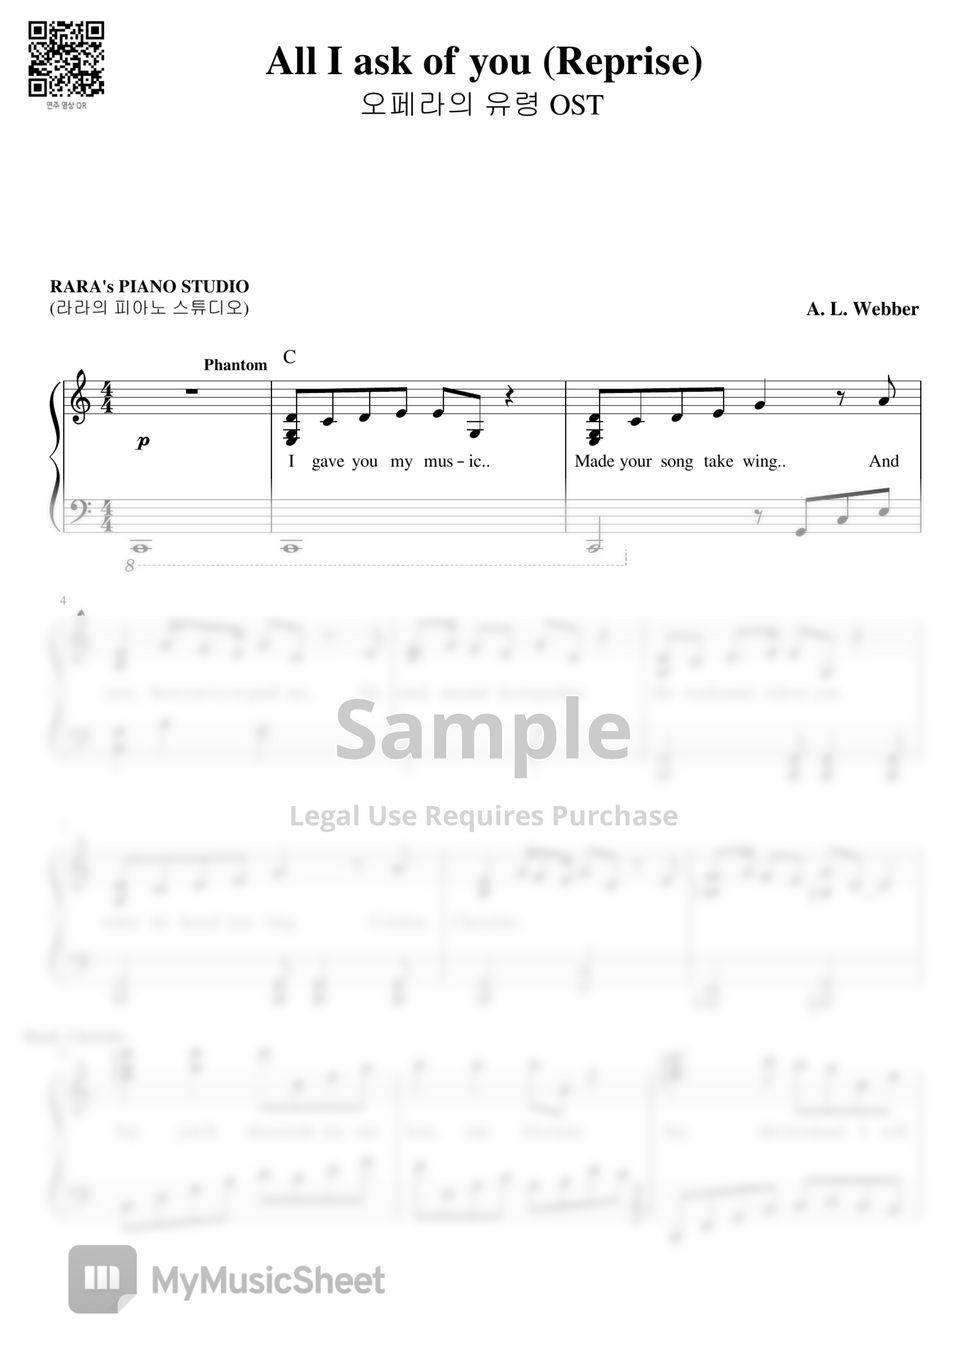 A. L. Webber - All I Ask Of You "Reprise" (Phantom Ver.) (CMajor) by RARA's PIANO STUDIO